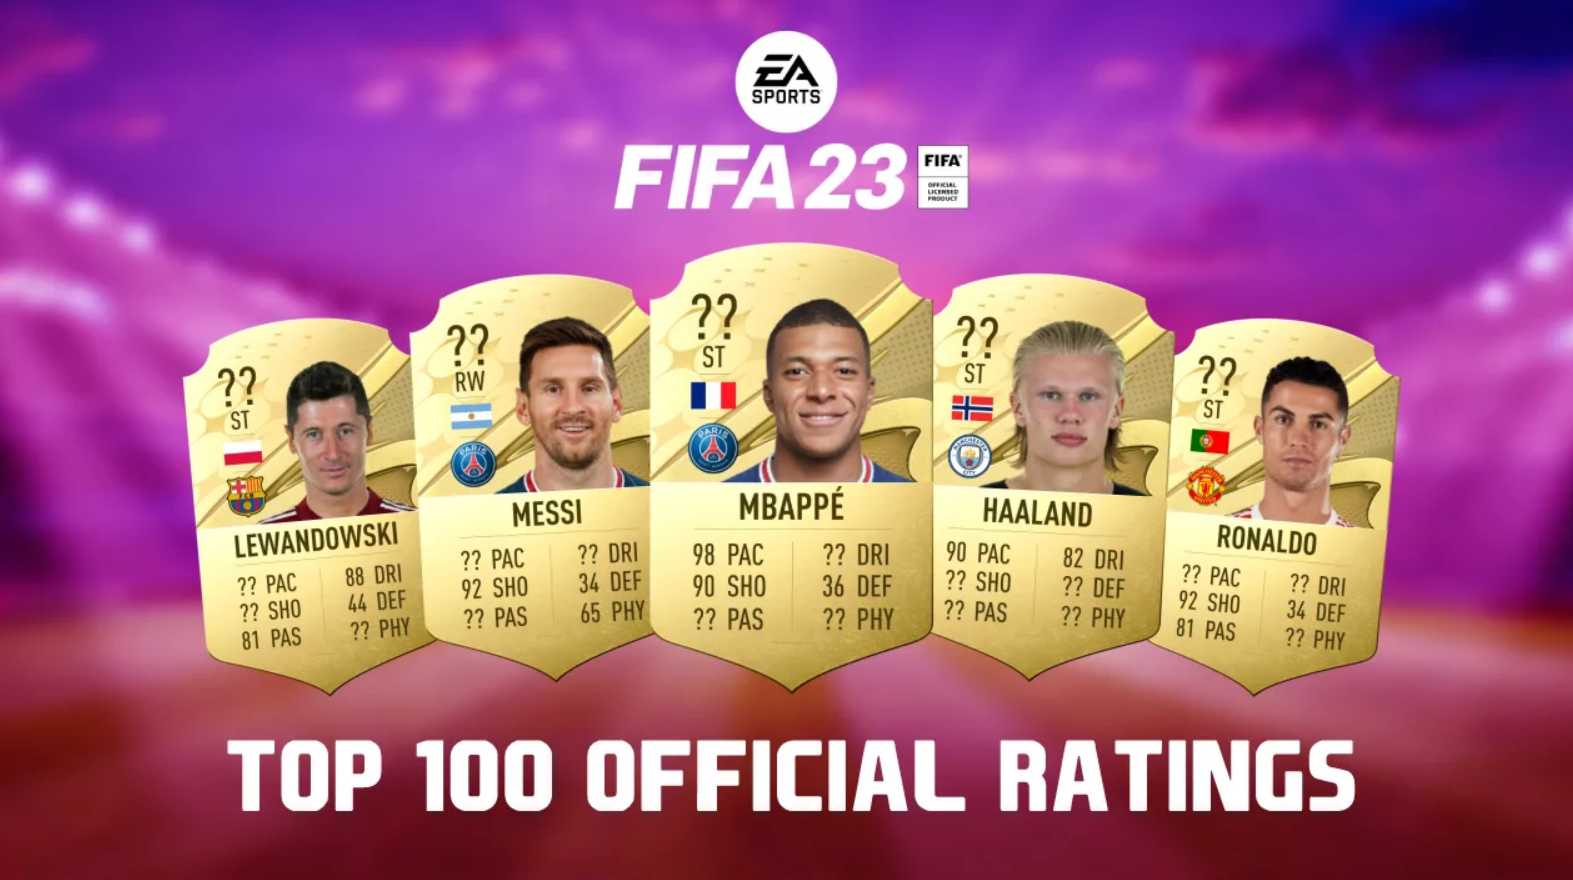 EA divulga lista dos jogadores com melhor rating no FIFA 23